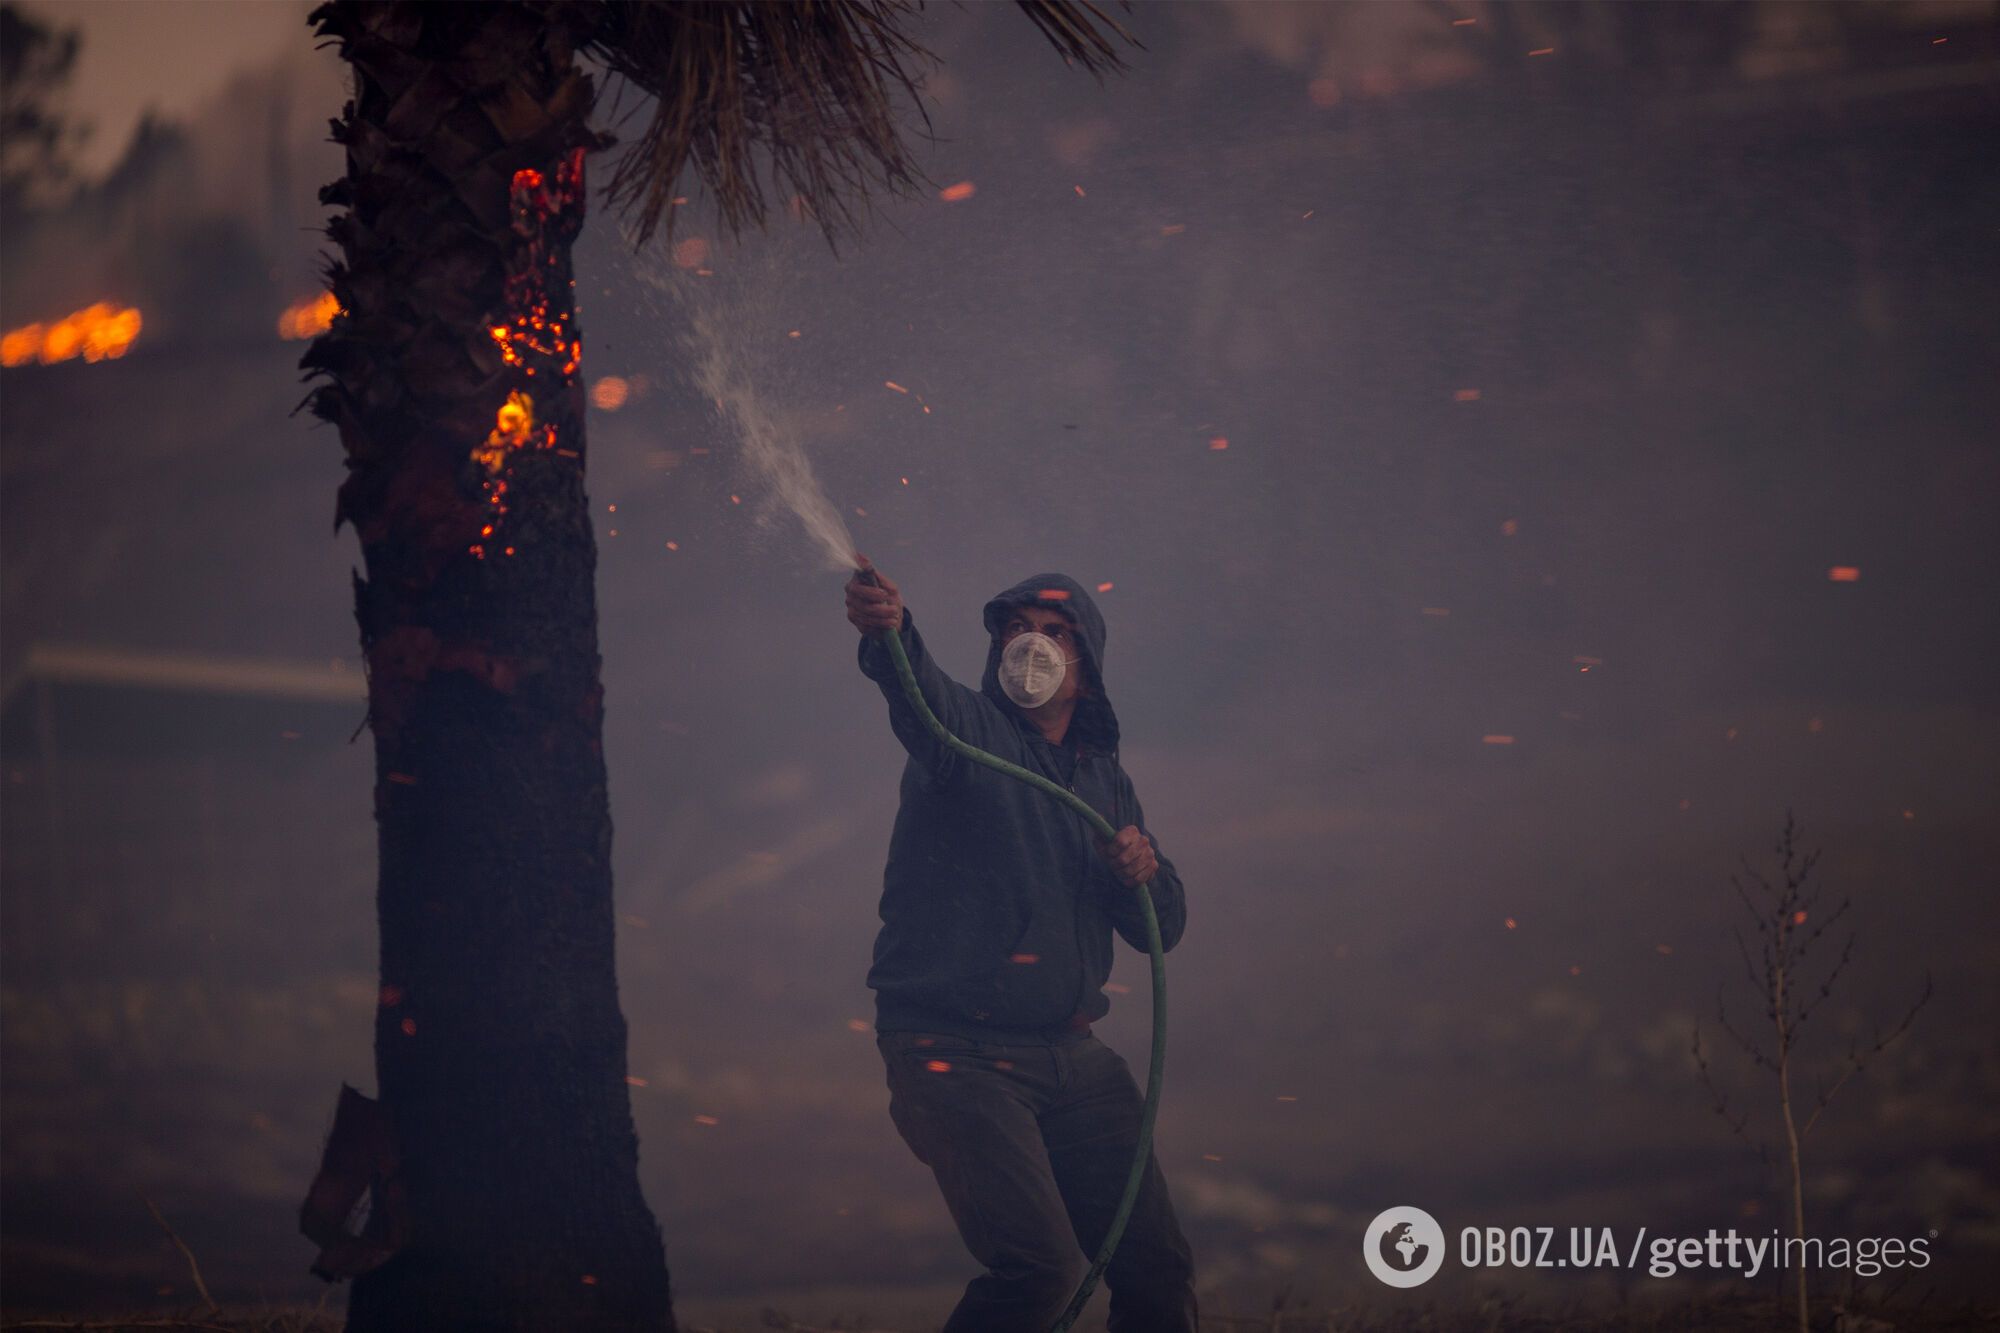 Вогняне пекло: з'явилися моторошні фото наслідків пожежі в Каліфорнії